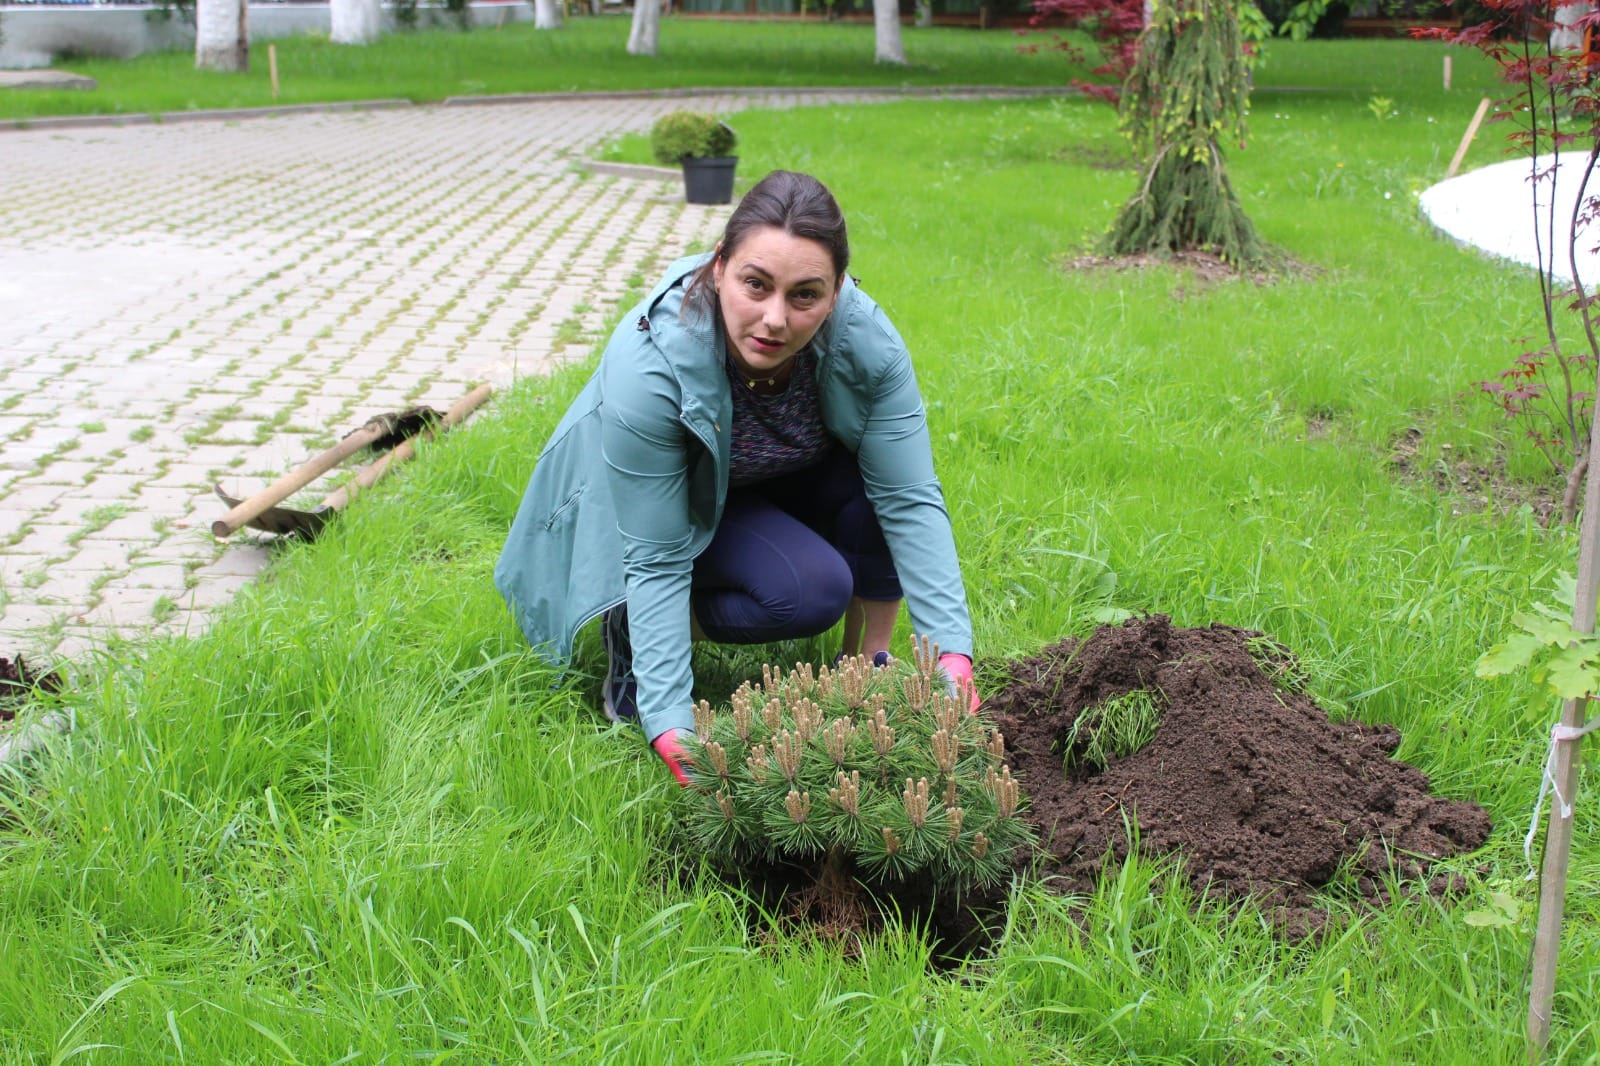 Blocul Operator de la Spitalul Caracal a răspuns provocării. Claudia Ion, asistent medical, a plantat un copac în curtea Primăriei Caracal